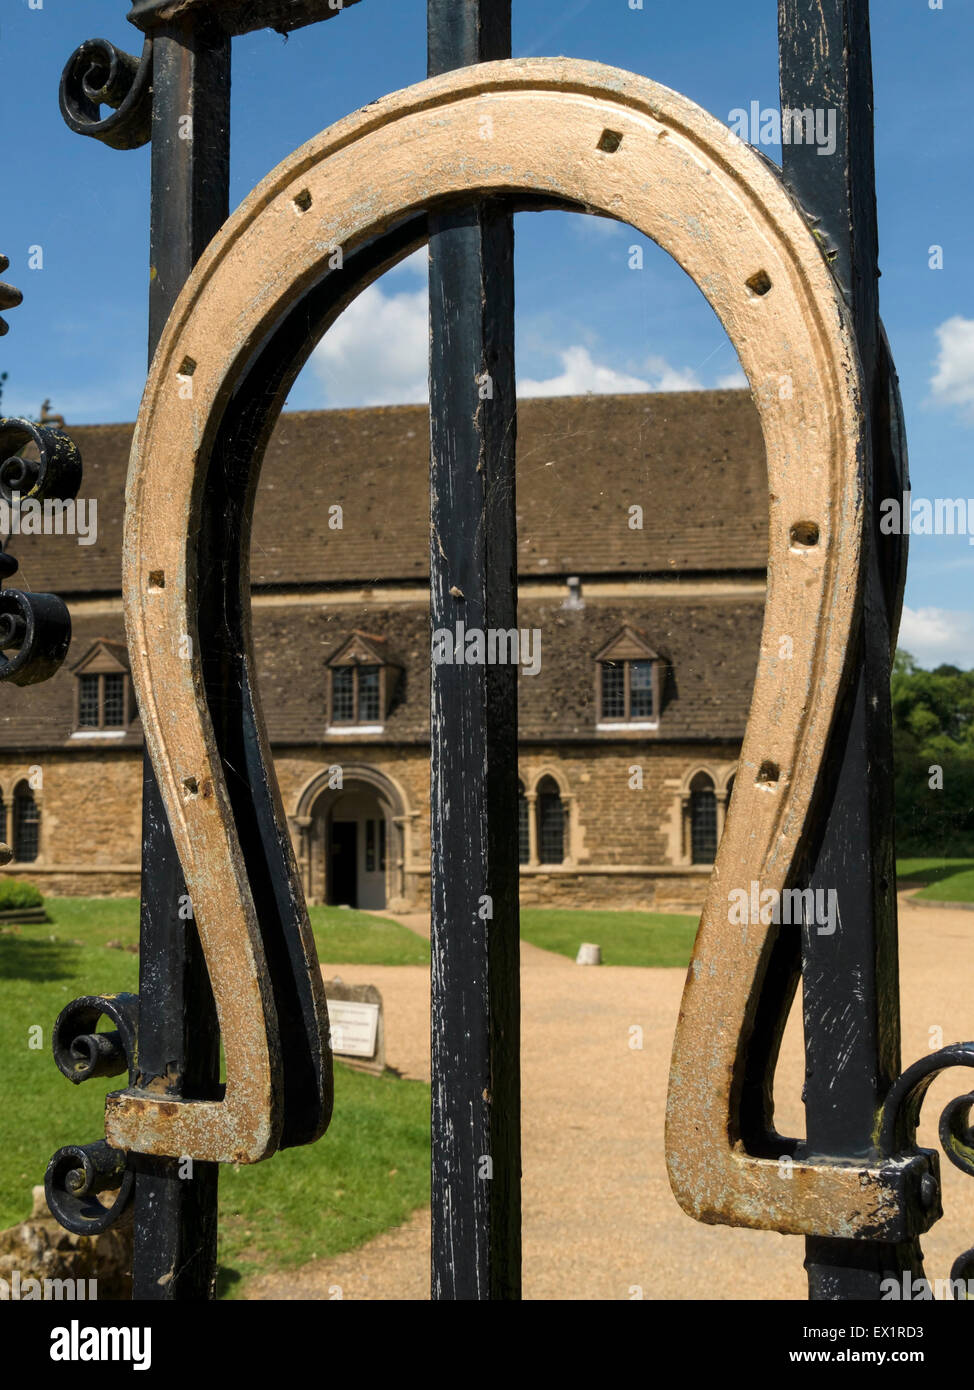 Golden horseshoe on the black wrought iron gates of Oakham Castle, with Great Hall beyond, Oakham, Rutland, England, UK. Stock Photo